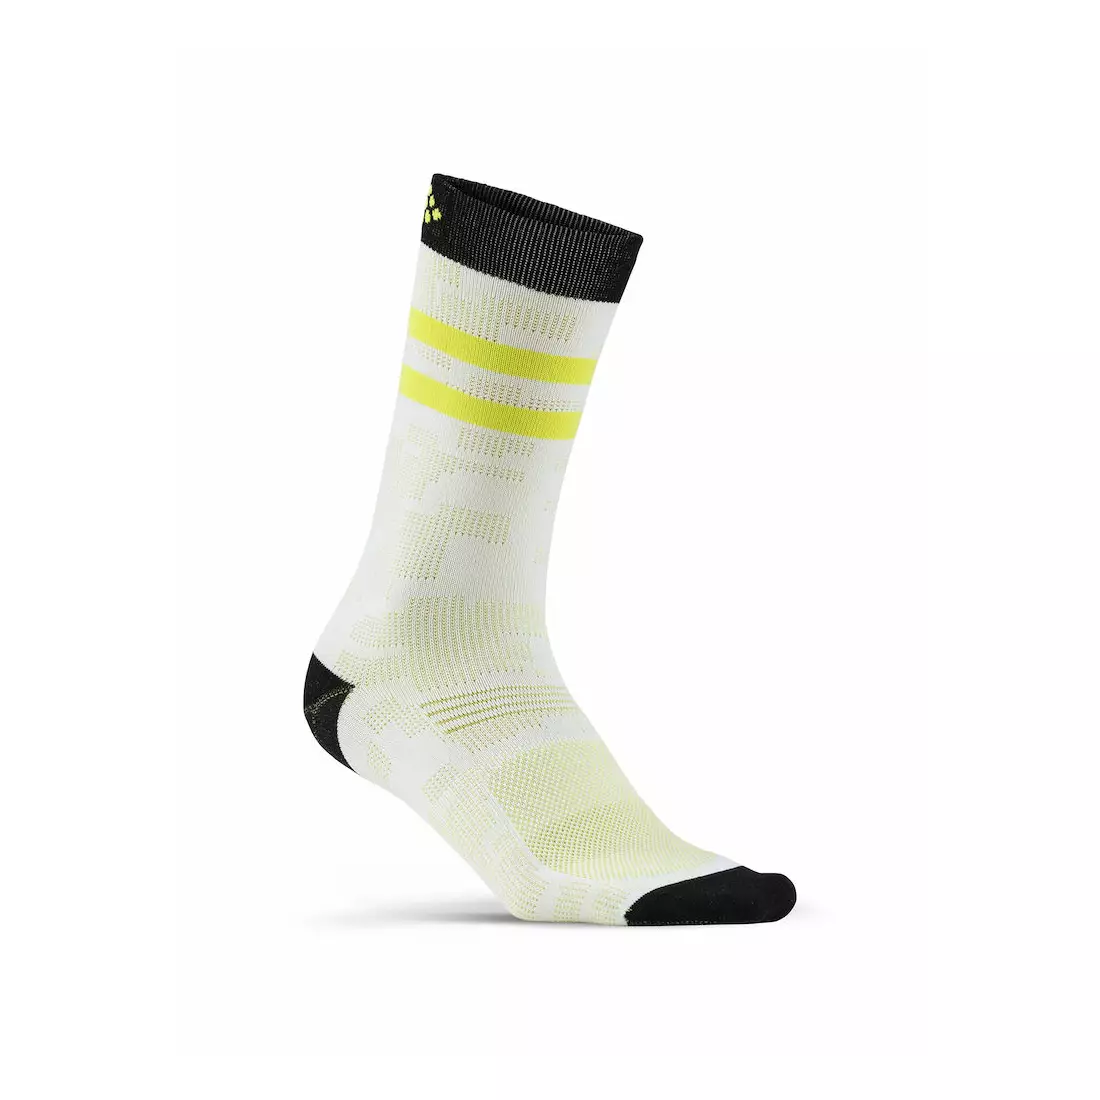 CRAFT Pattern Sock 1906061-900000 - Sports socks